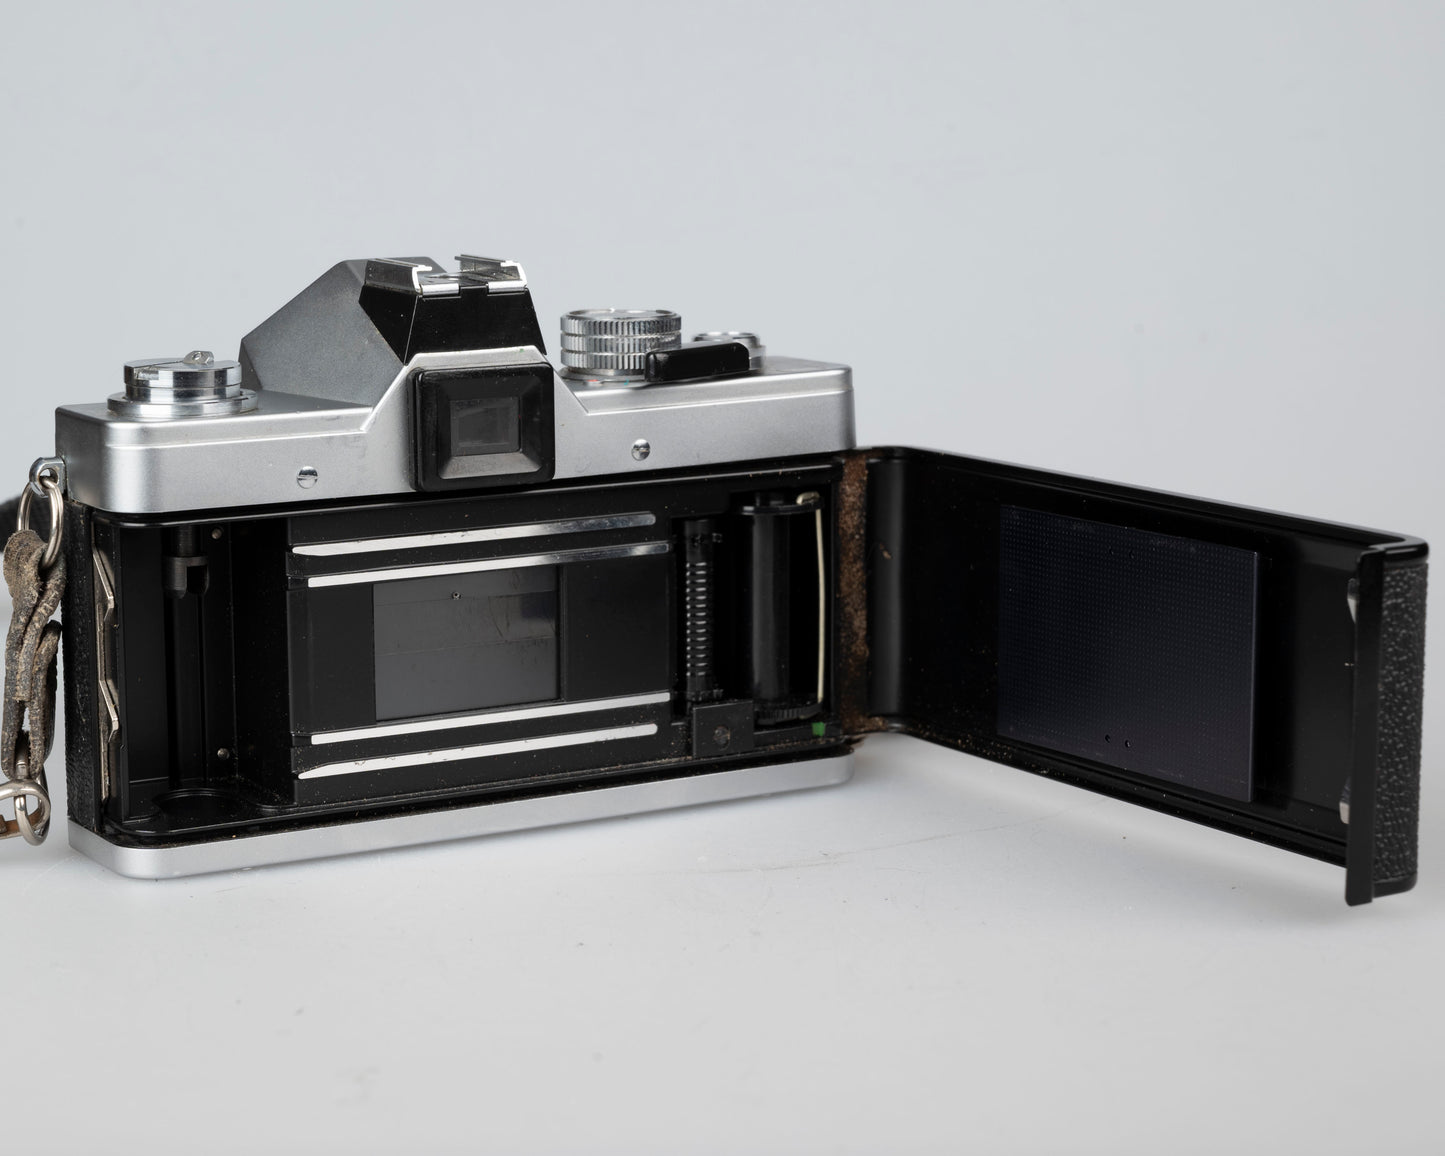 Praktica LTL 3 35mm film SLR camera w/Pentacon 50mm f1.8 lens (serial 344044)